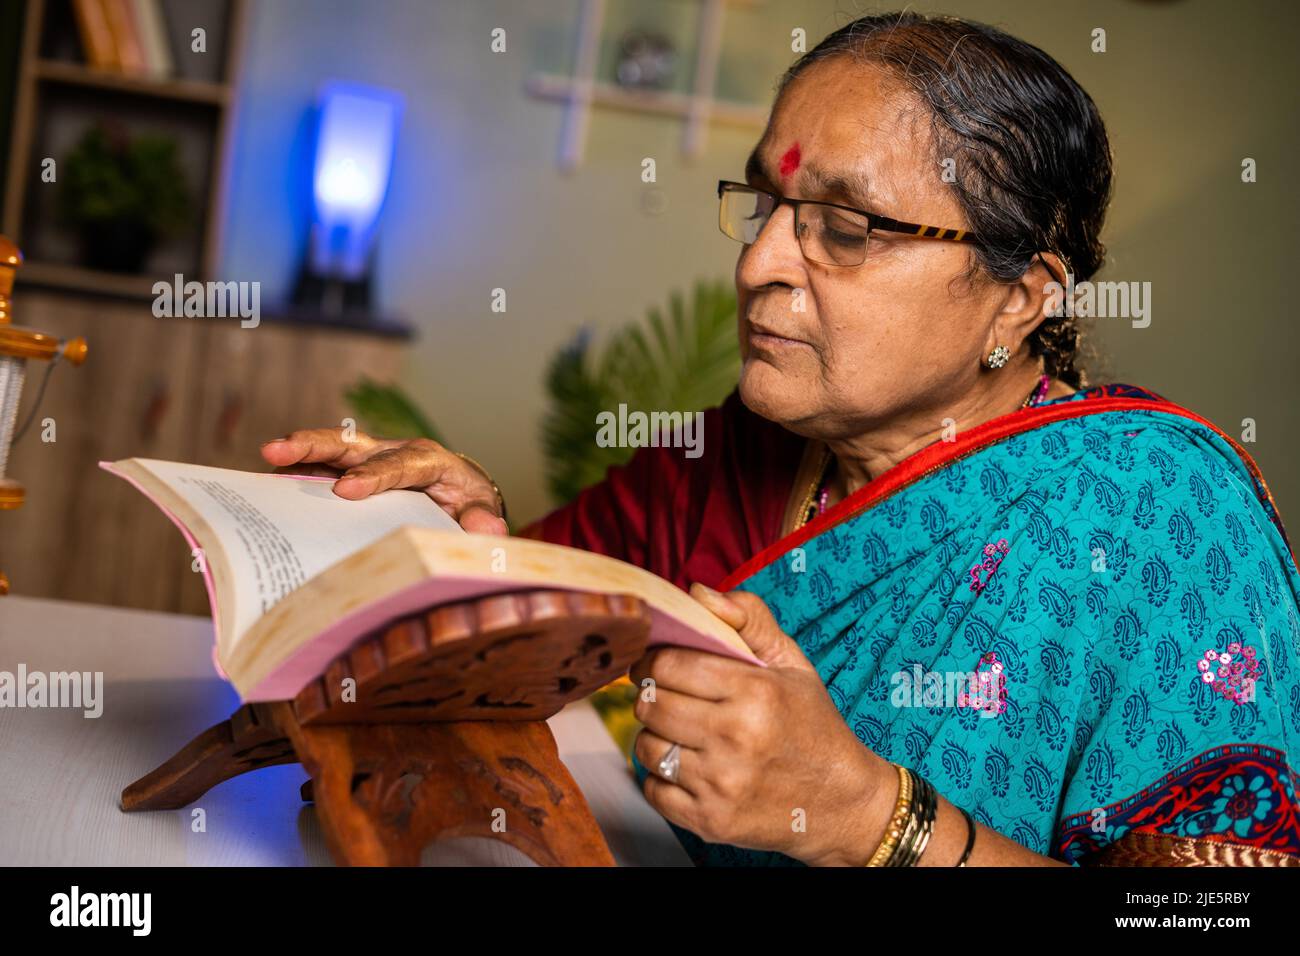 Ältere indische Frau mit Brille, die zu Hause Buch liest - Konzept der Freizeitbeschäftigung, Hobbys und Wissen. Stockfoto